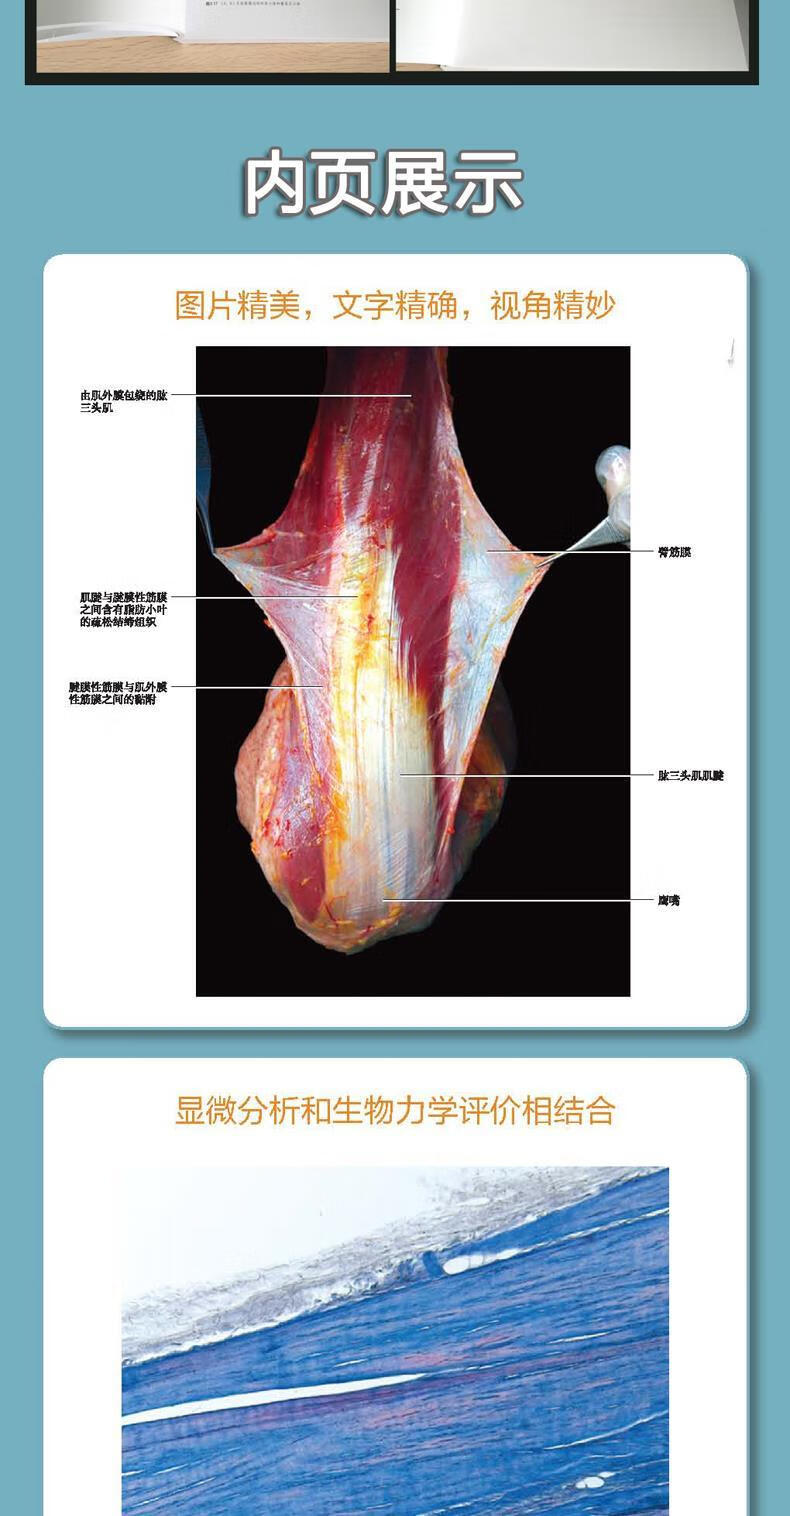 人体筋膜系统功能解剖图谱 贺大林主译 意大利引进中文简体版功能解剖